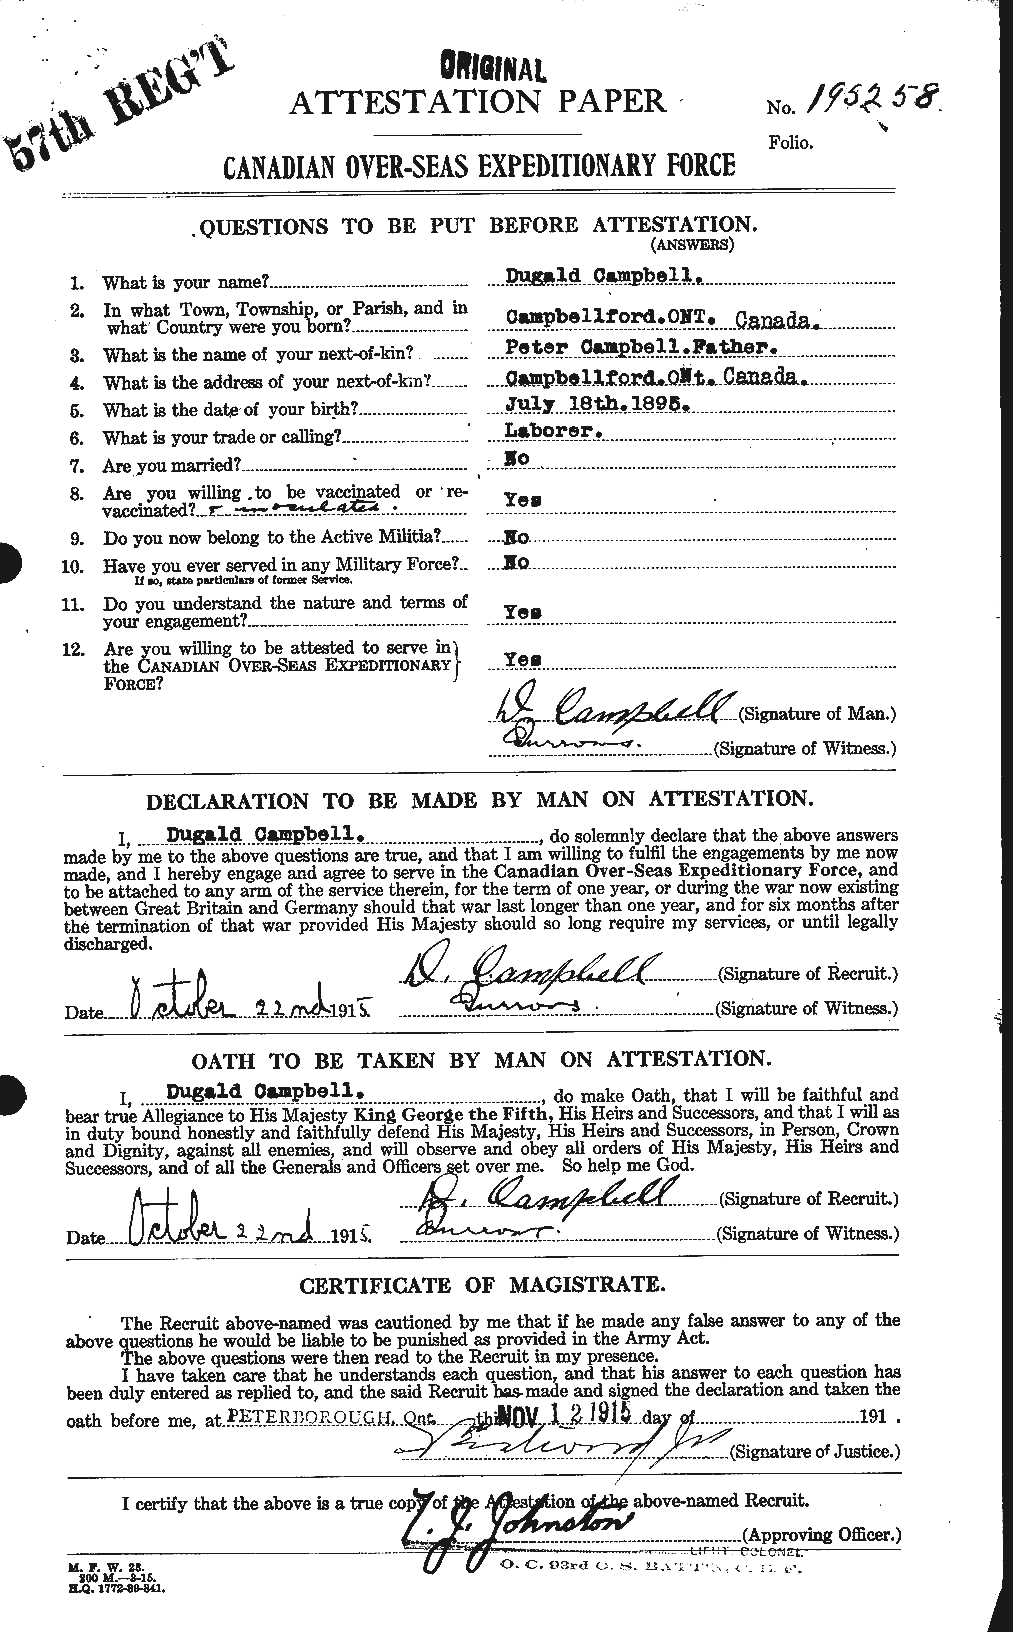 Dossiers du Personnel de la Première Guerre mondiale - CEC 003631a